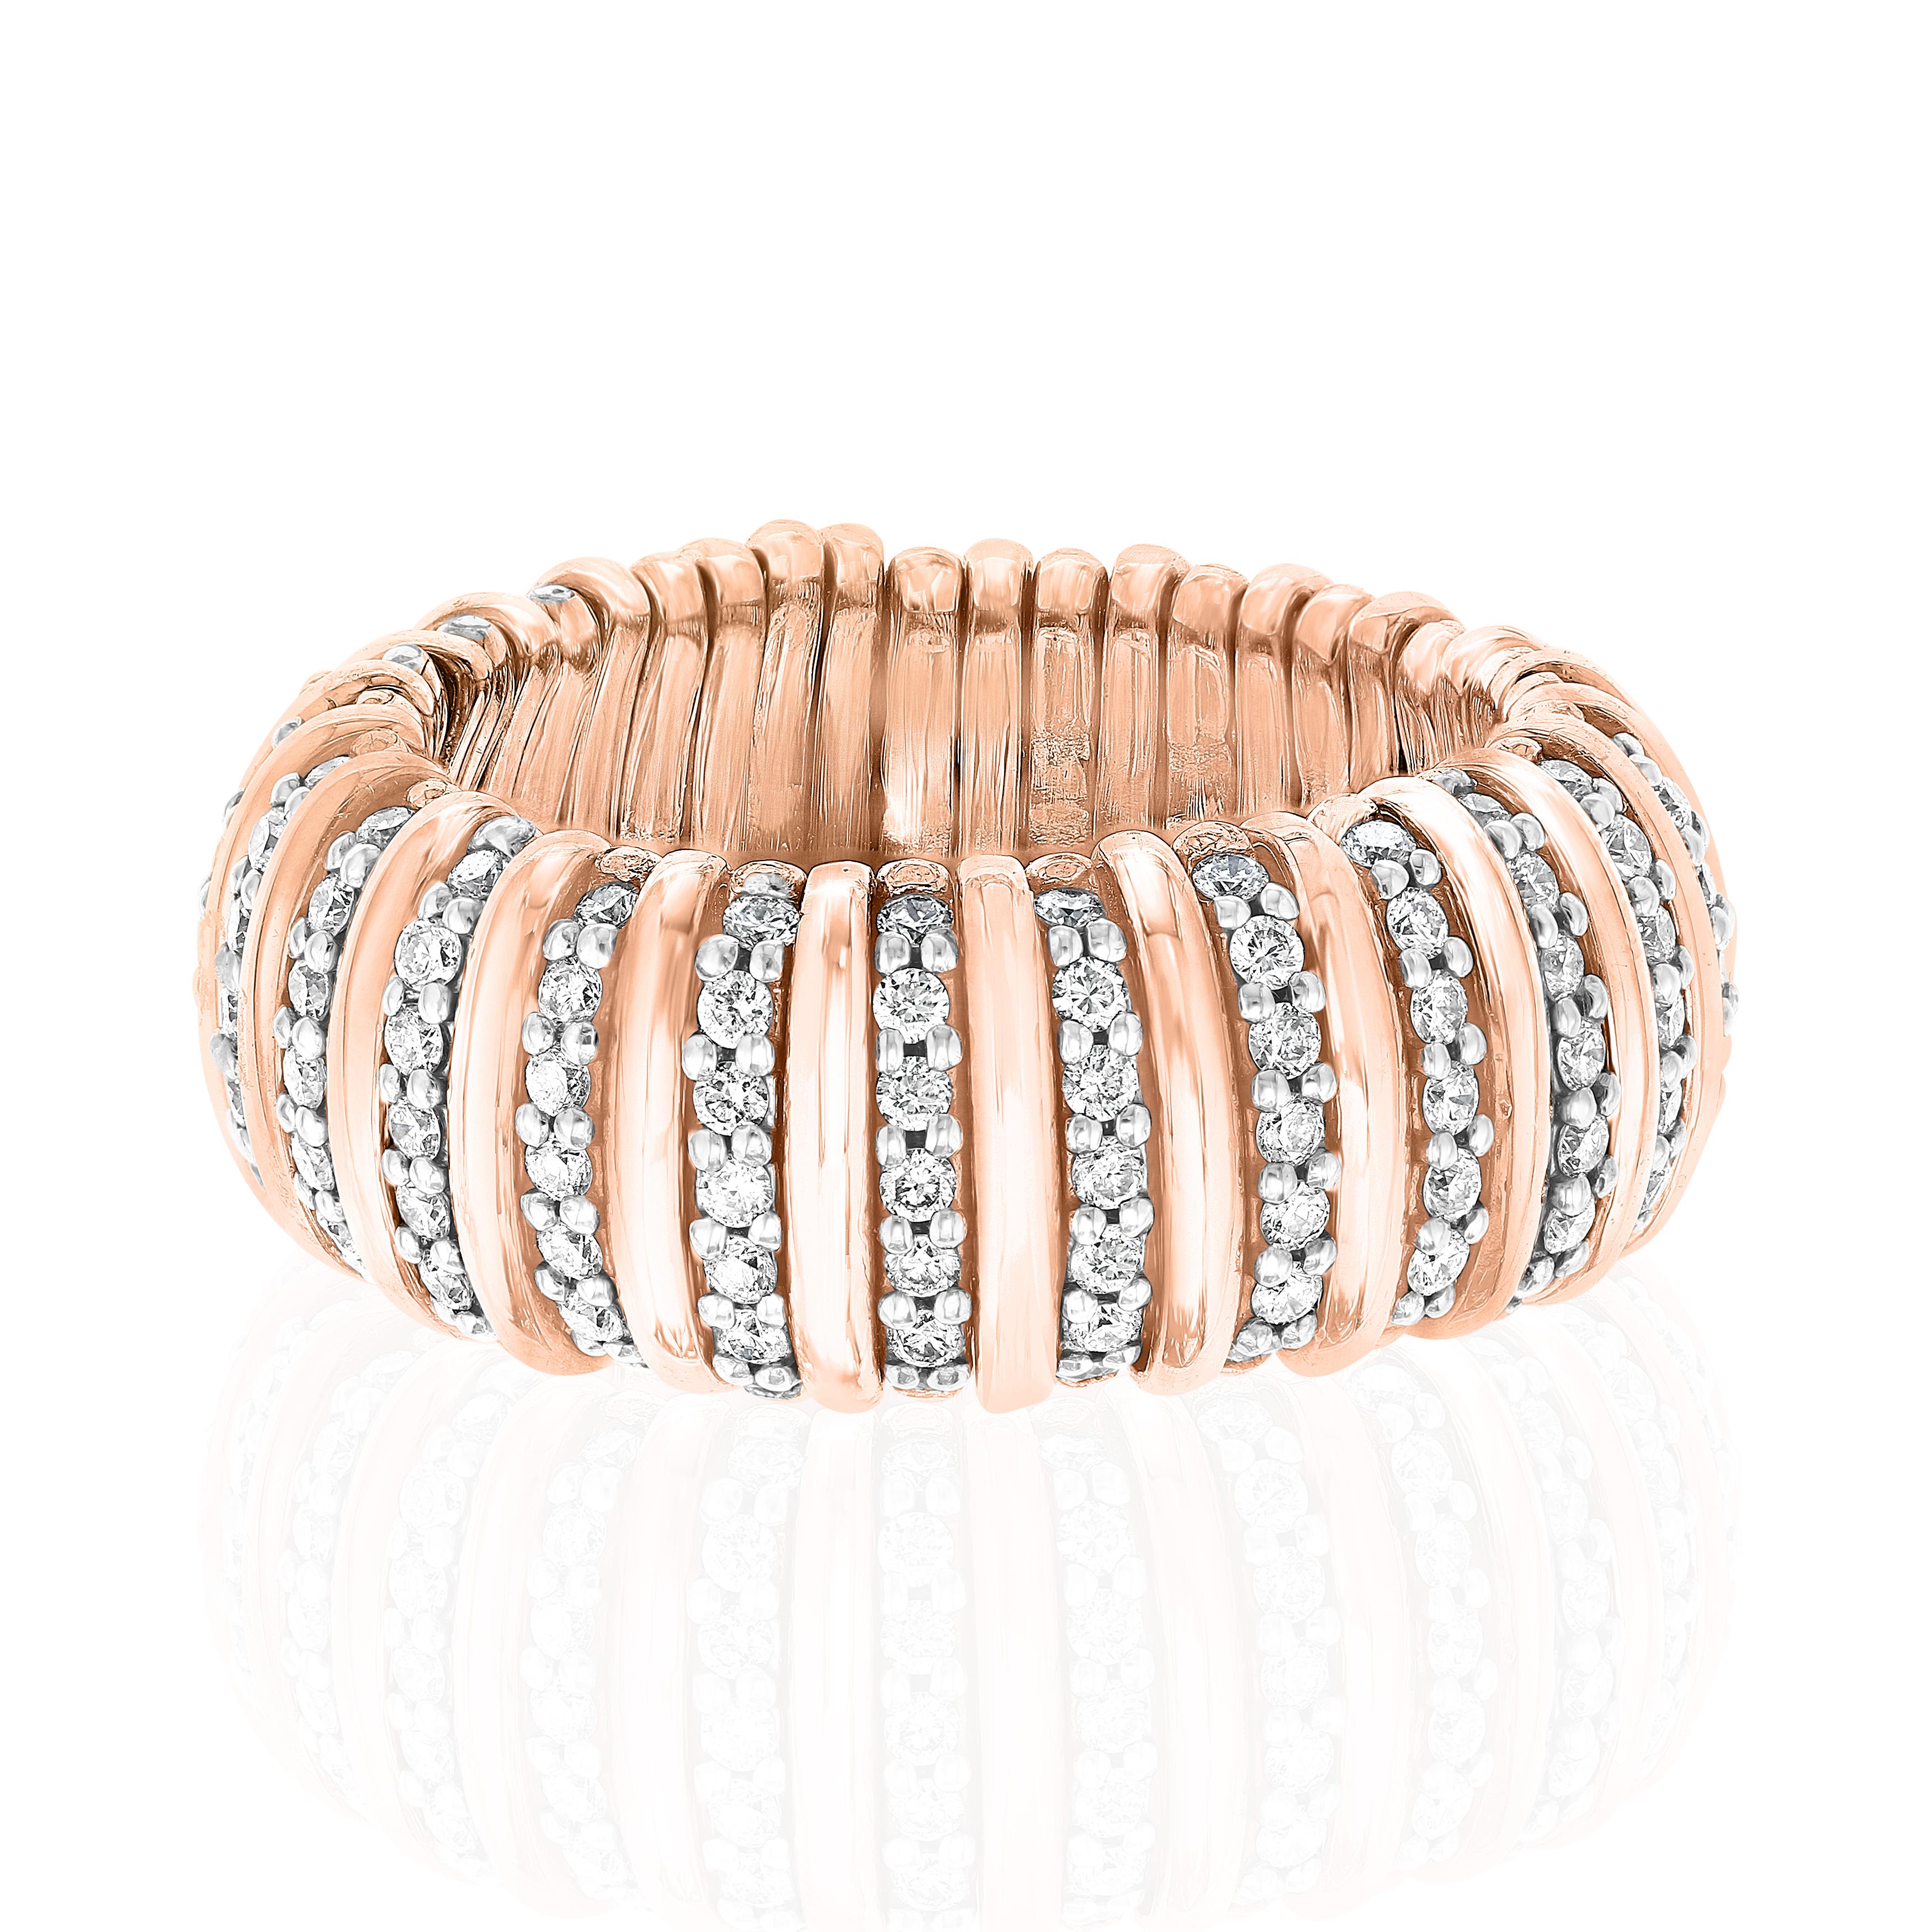 Zweifarbiges Rosé- und Weißgold, besetzt mit runden Diamanten von 1,399 Karat.
Rautenmuster, das rundherum verläuft.
Der Ring ist dehnbar und kann in den Größen 8-10 getragen werden.
18 Karat Gold.